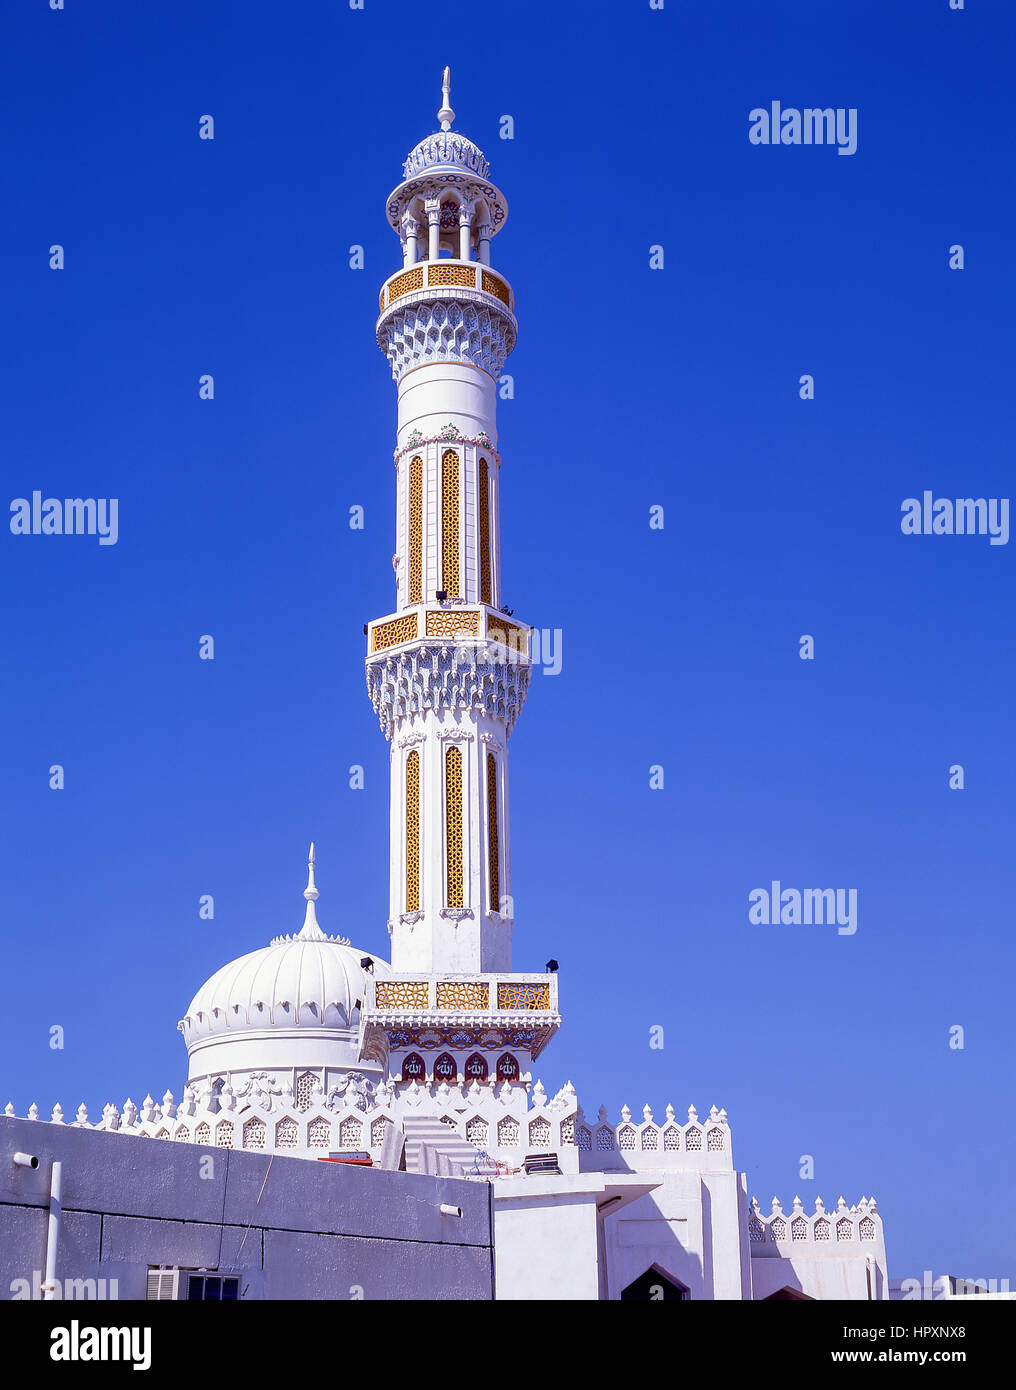 Minaret de la mosquée Banque de photographies et dimages à haute résolution photo photo